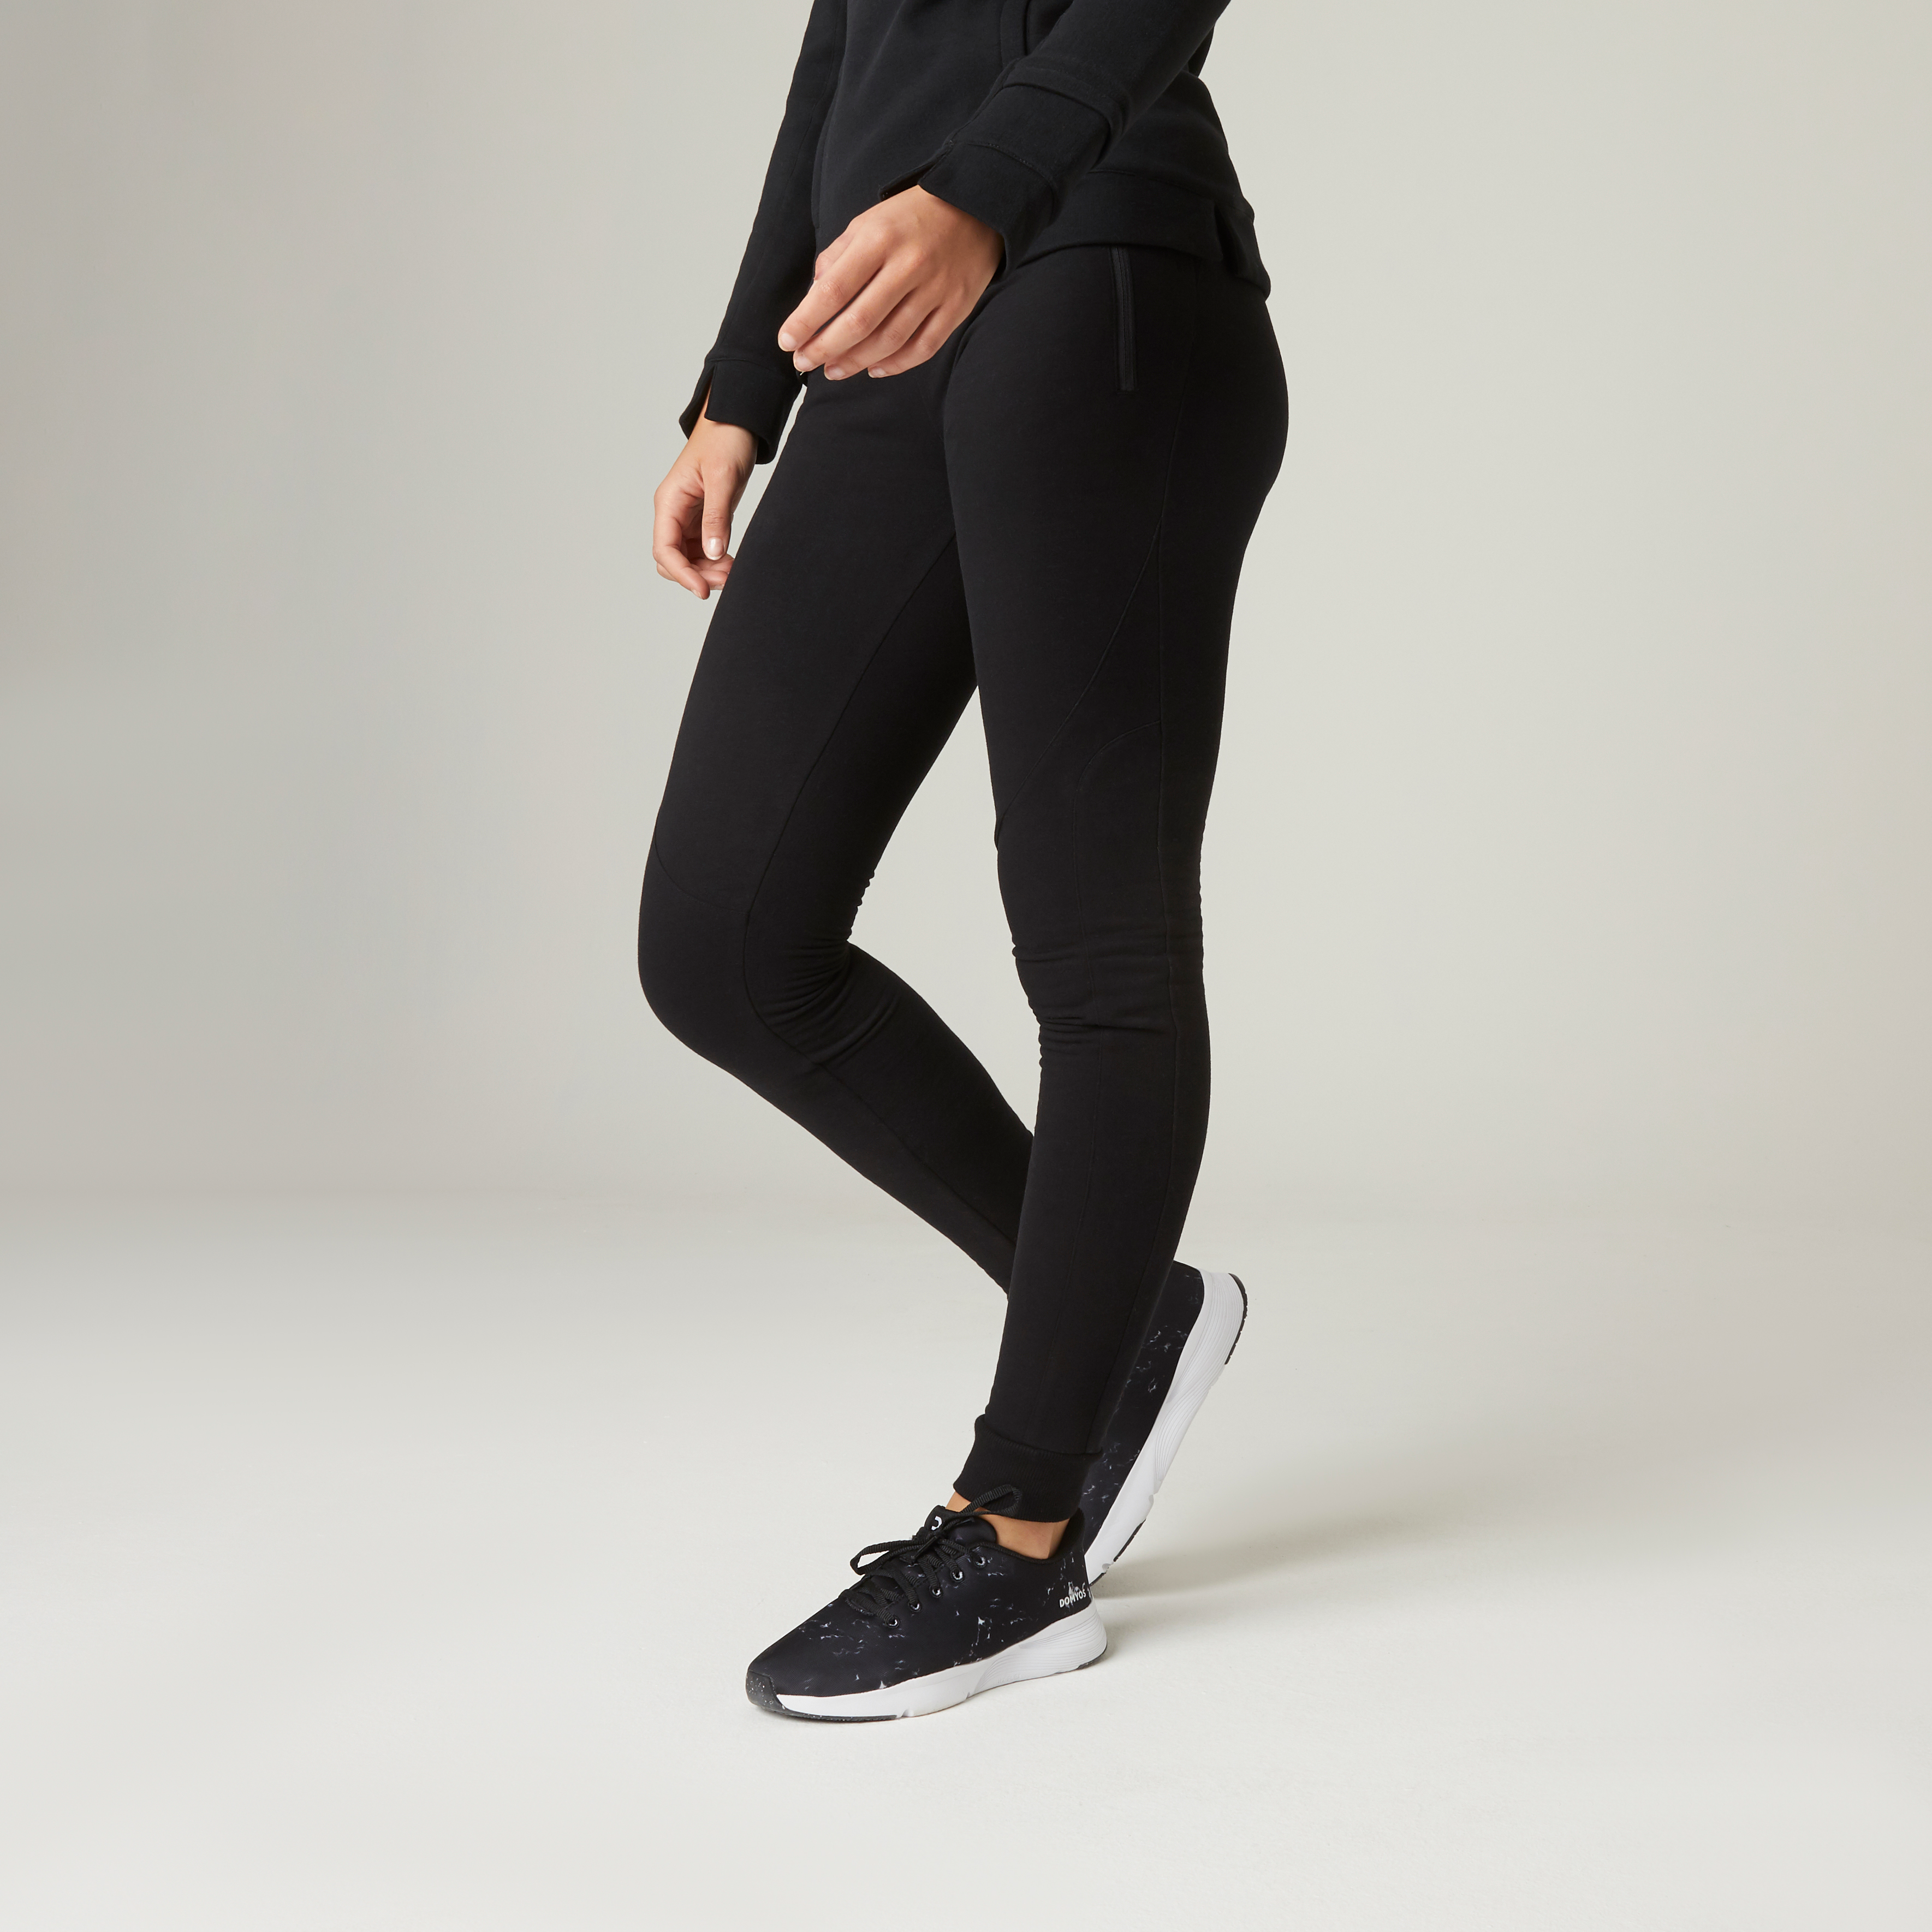 Pantalon Jogging SIim Fitness Femme - 520 noir pour les clubs et